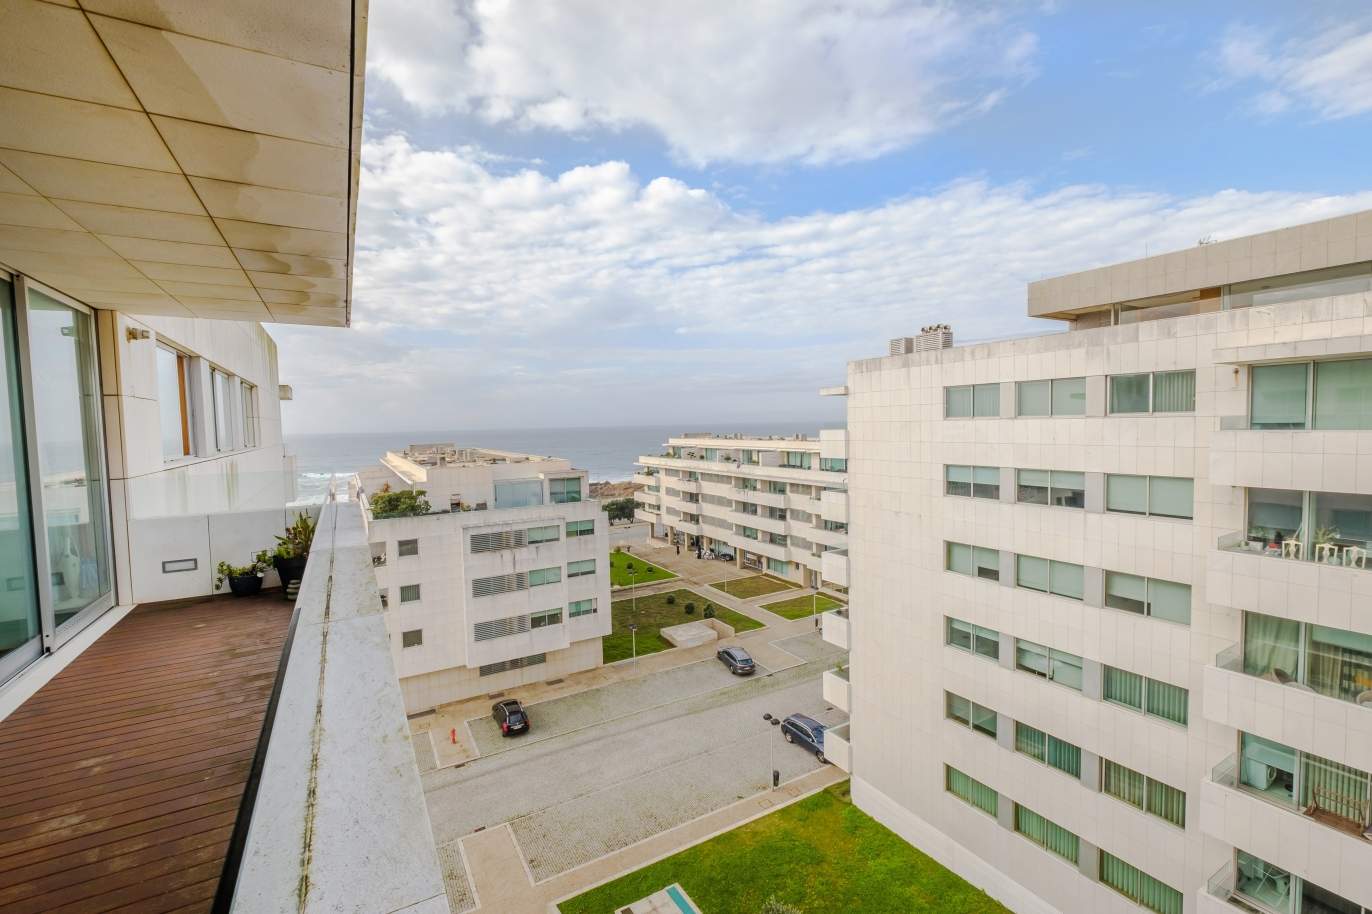 Venda de apartamento moderno, vistas mar, Leça Palmeira,Porto,Portugal_156133